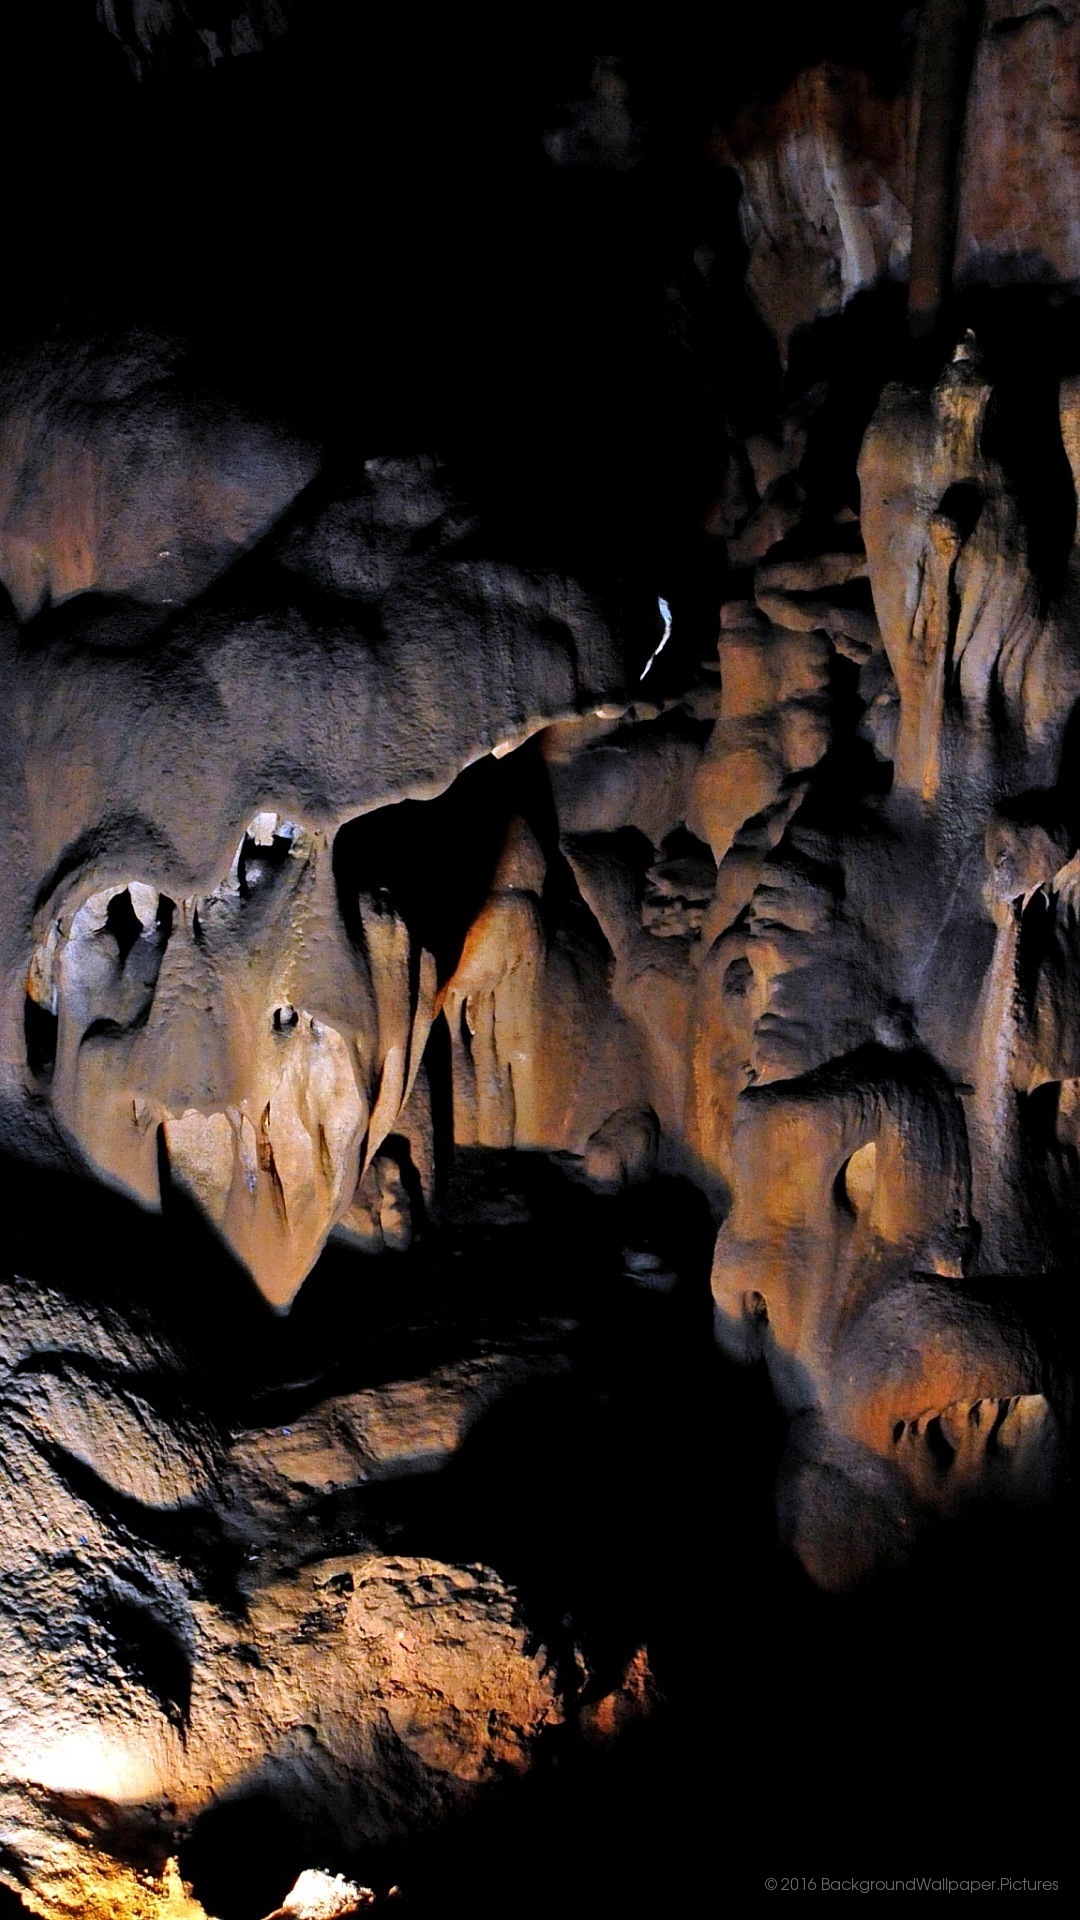 letv wallpaper hd,grotta,formazione,stalagmite,arte,illustrazione